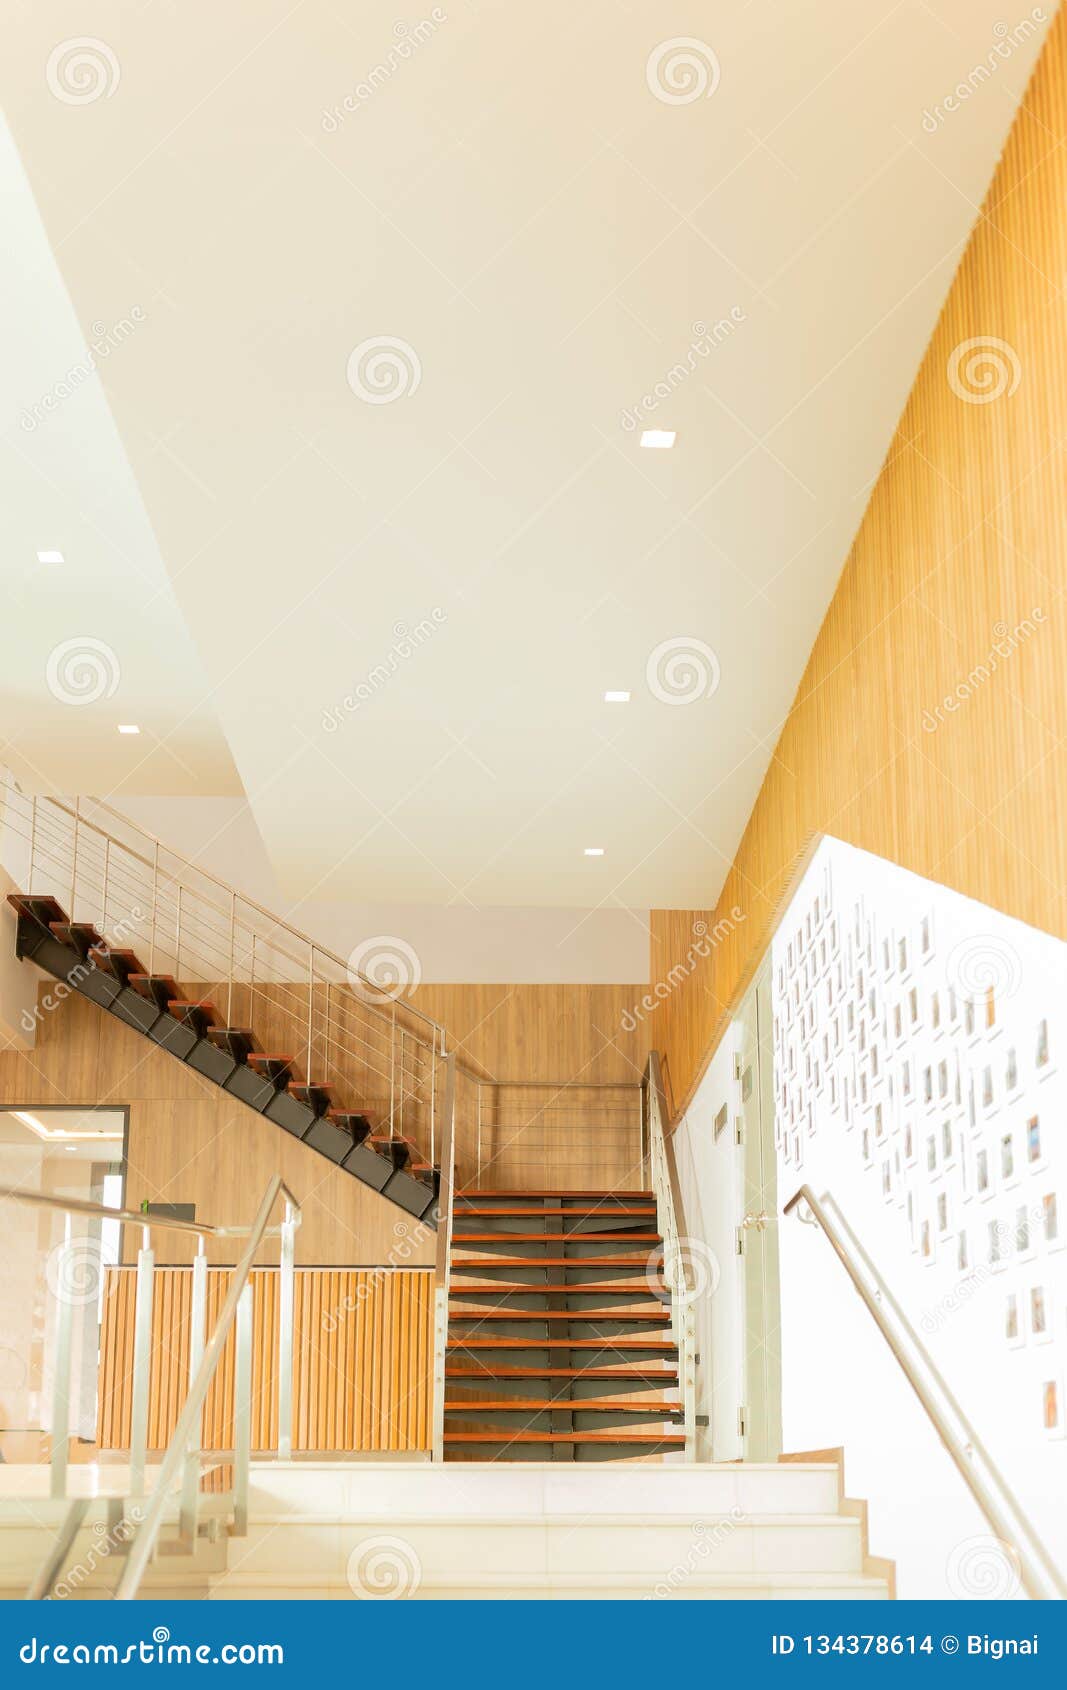 Escaleras De Madera Interiores A La Medida De Lujo En El Edificio Moderno Foto De Archivo Imagen De Vacio Vestibulo 134378614